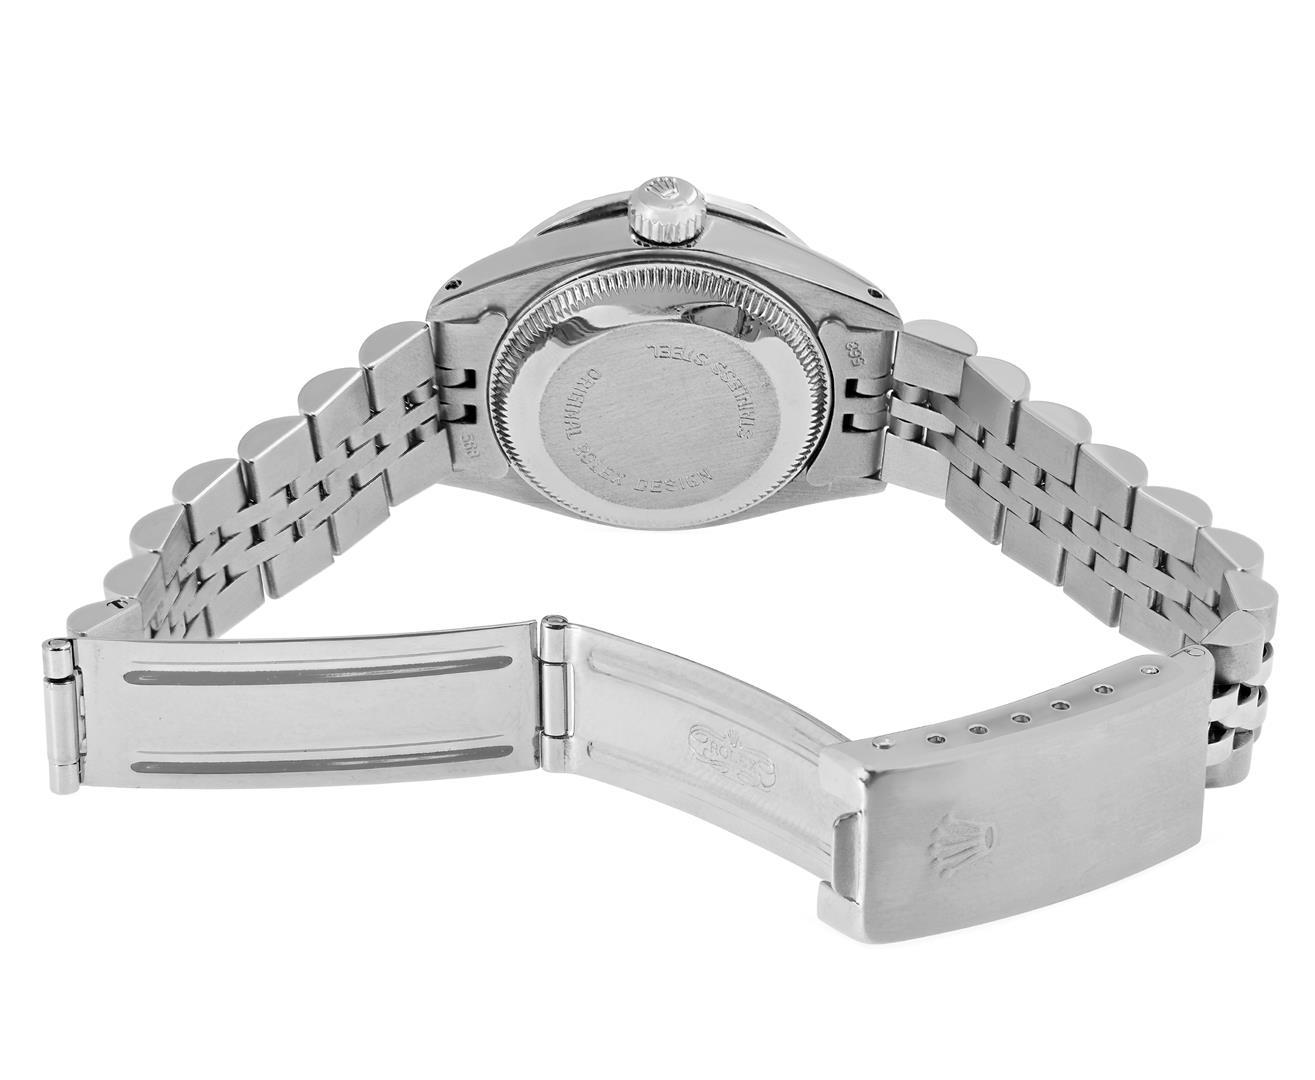 Rolex Ladies Stainless Steel Silver Index 18K White Gold Diamond Bezel Date Watc